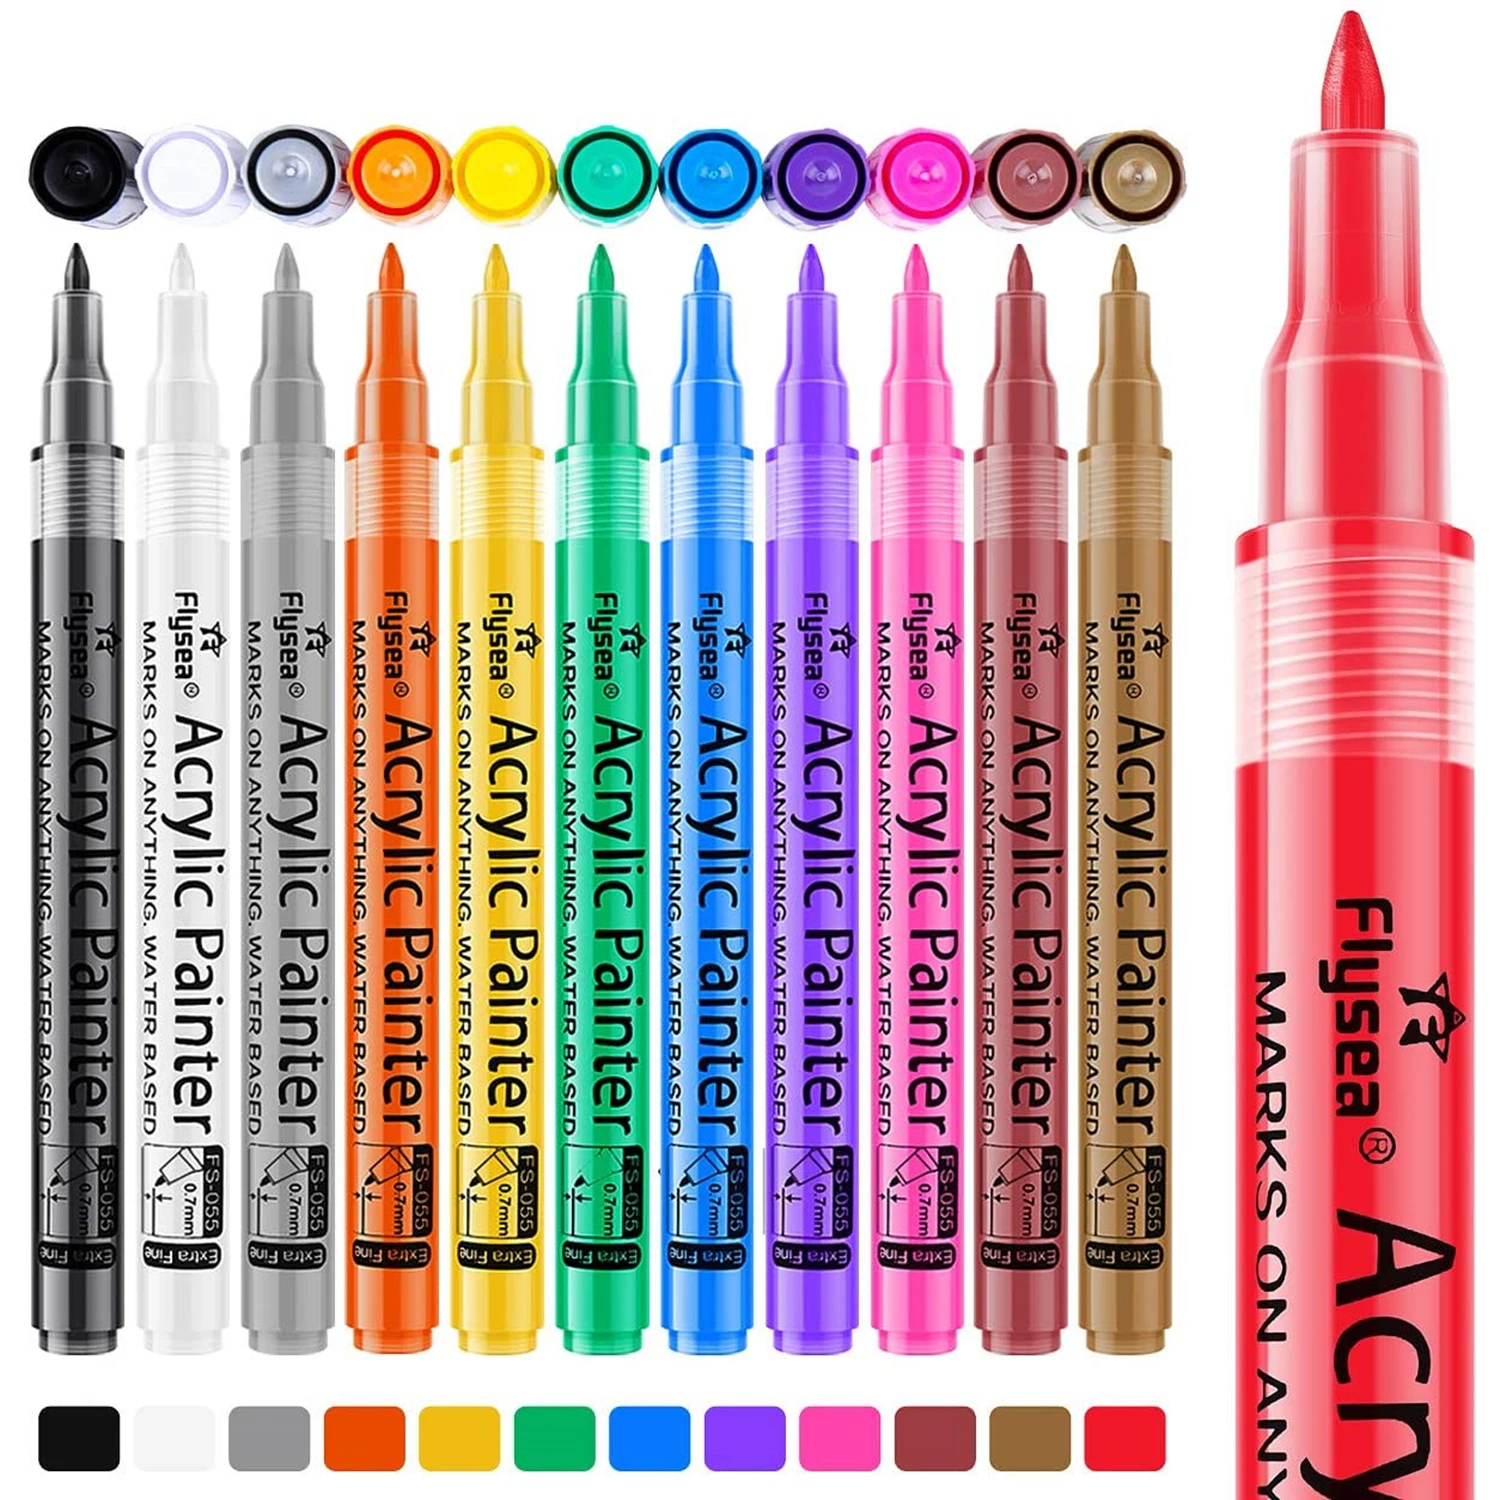 

Маркеры для акриловых красок, 12 цветов, водонепроницаемые перманентные художественные маркеры премиум-класса для творчества и творчества